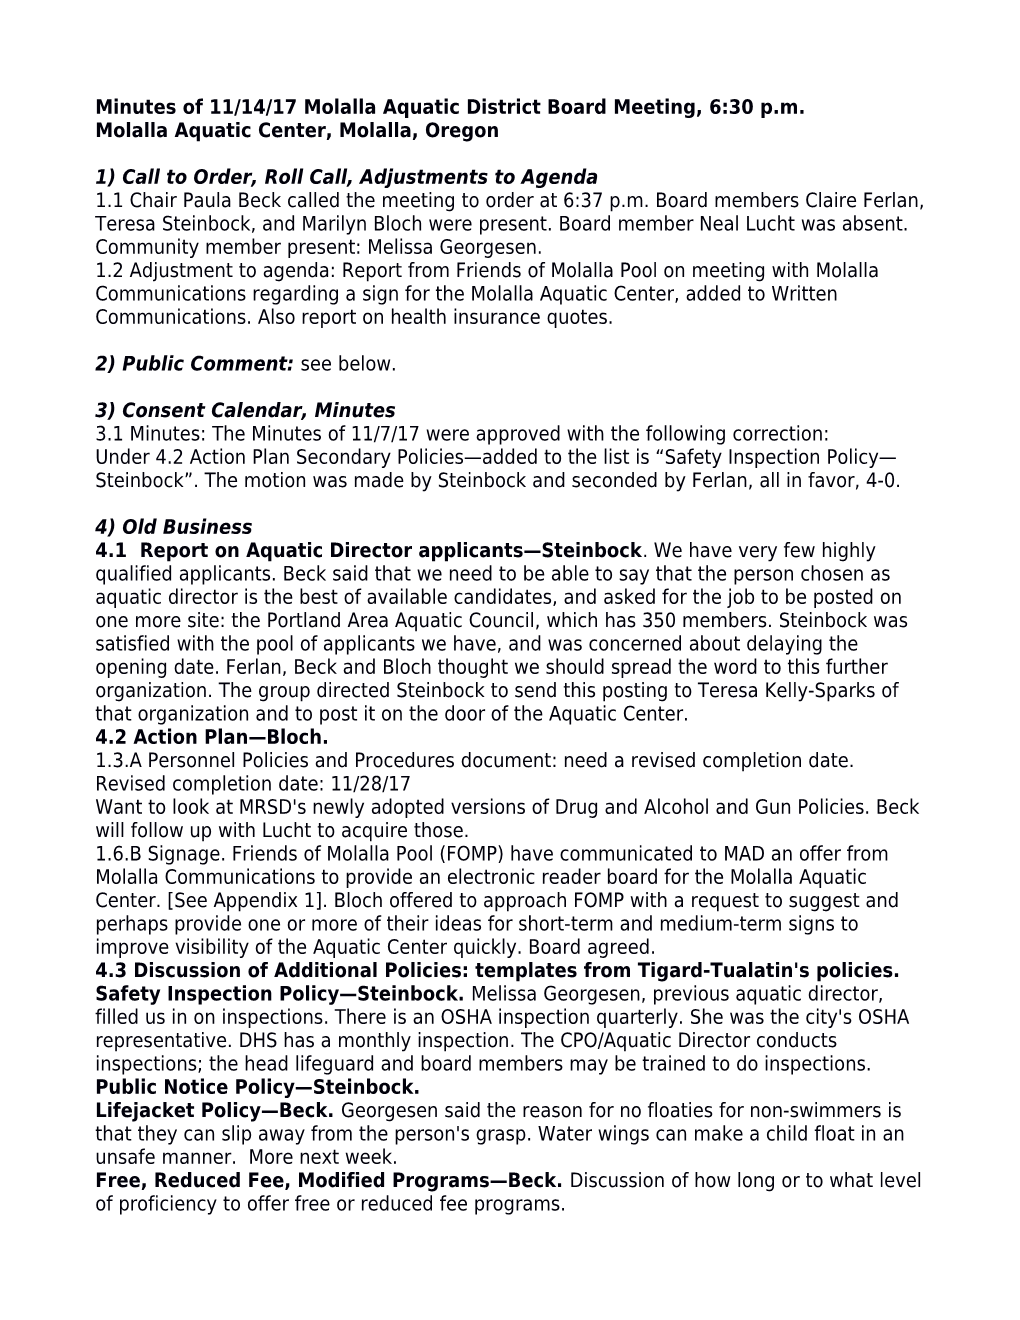 Minutes of 11/14/17 Molalla Aquatic District Board Meeting, 6:30 P.M